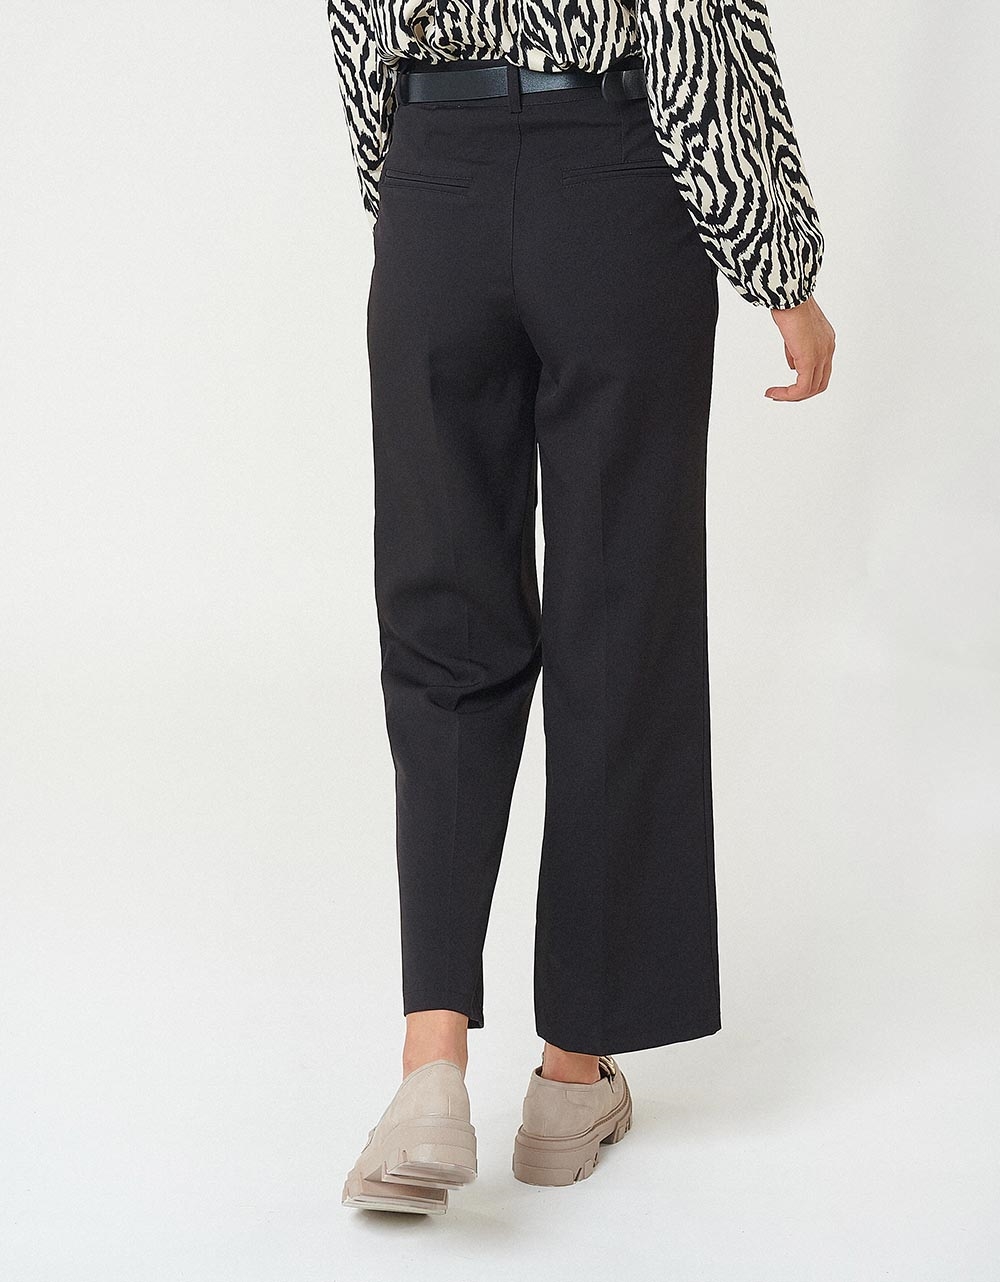 Εικόνα από Γυναικείο παντελόνι υφασμάτινο cropped με πιέτες Μαύρο